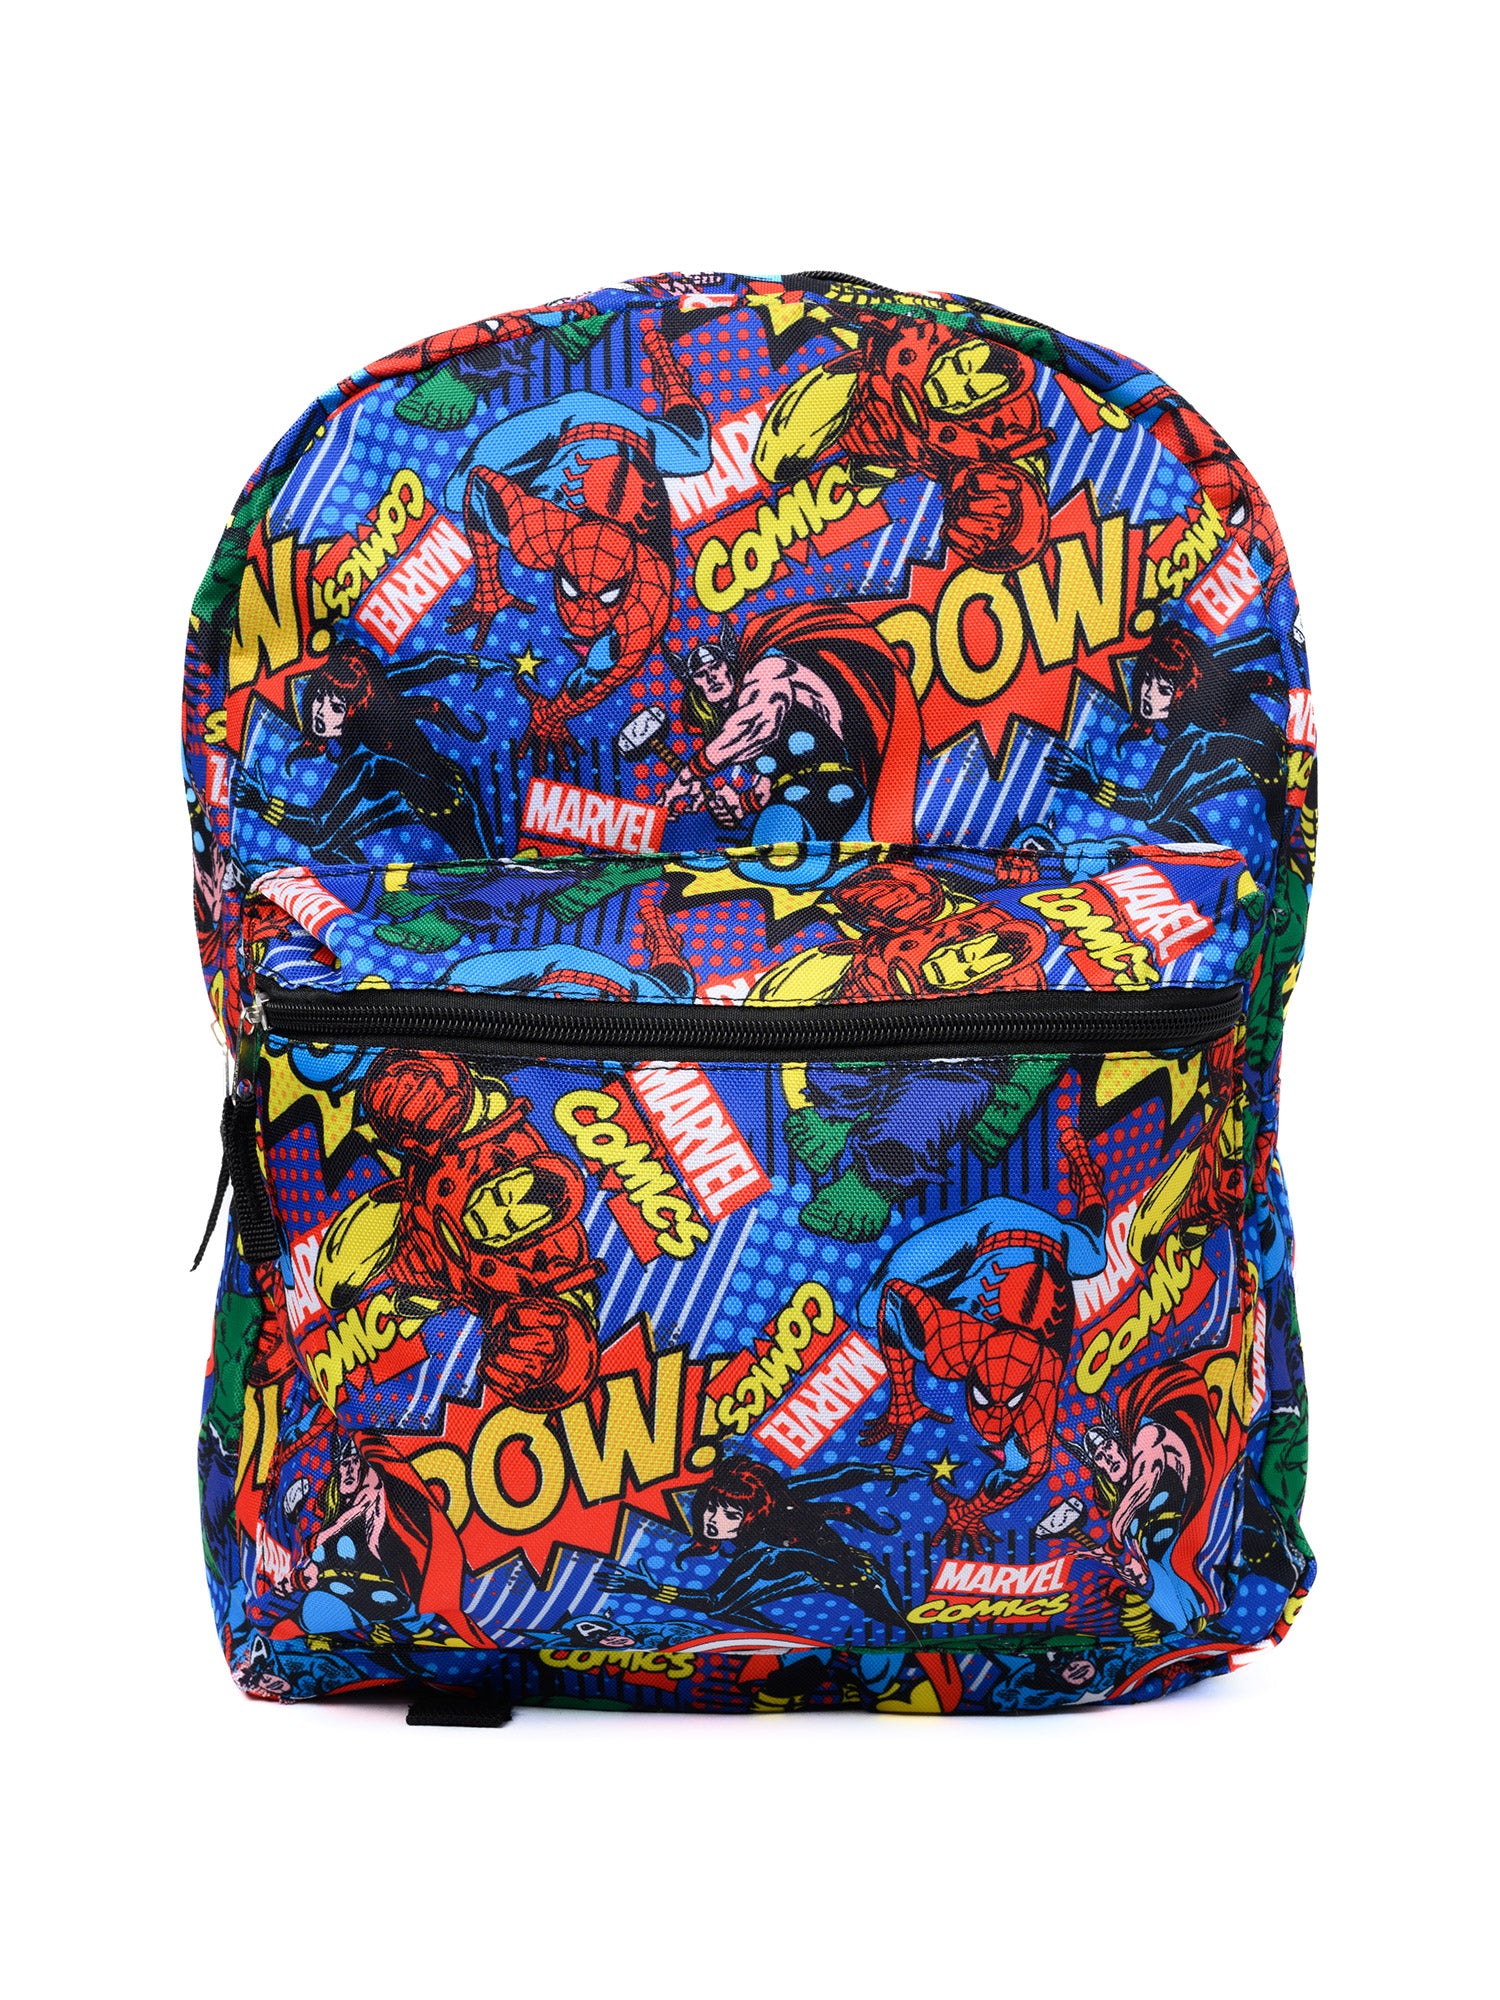 Marvel Avengers Backpack 16" Spider-Man w/ Large Zipper 3-Ring Holder Set